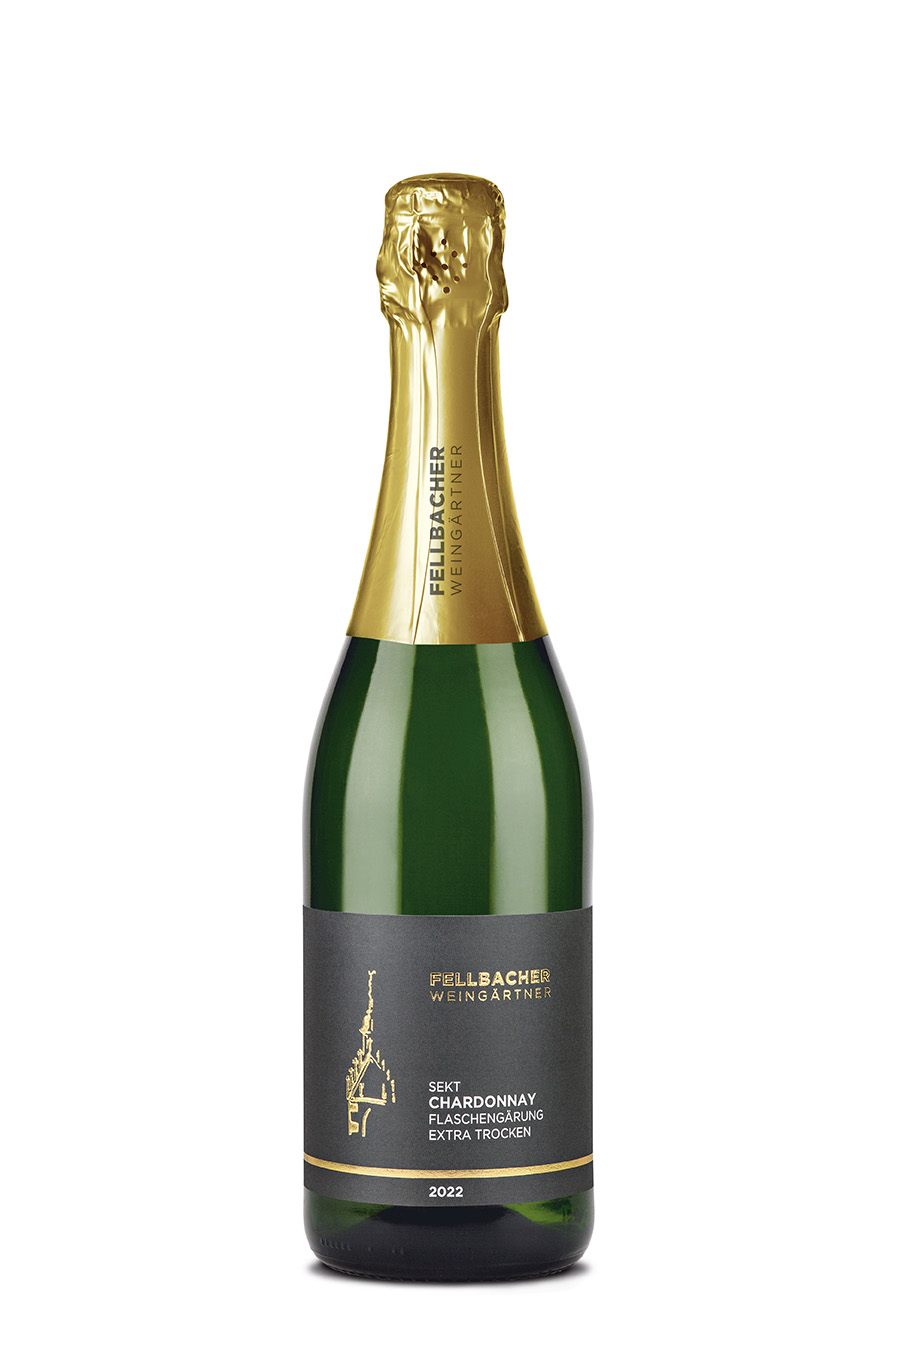 2022 Chardonnay Sekt extra trocken 0,75 L - Fellbacher Weingärtner